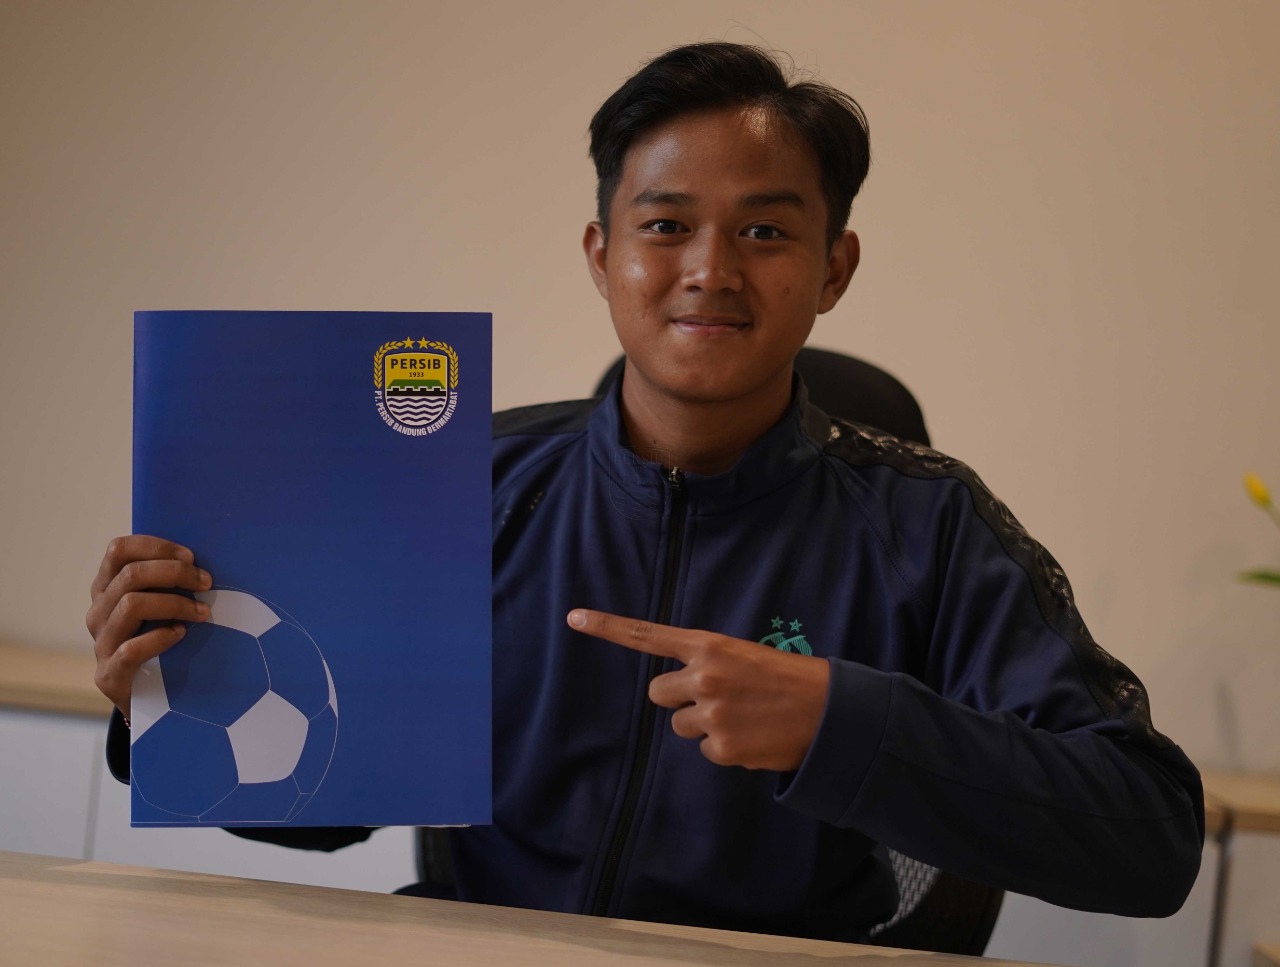 Bursa Transfer Liga 1: Persib Bandung Resmi Promosikan Dua Pemain Muda Jebolan Diklat